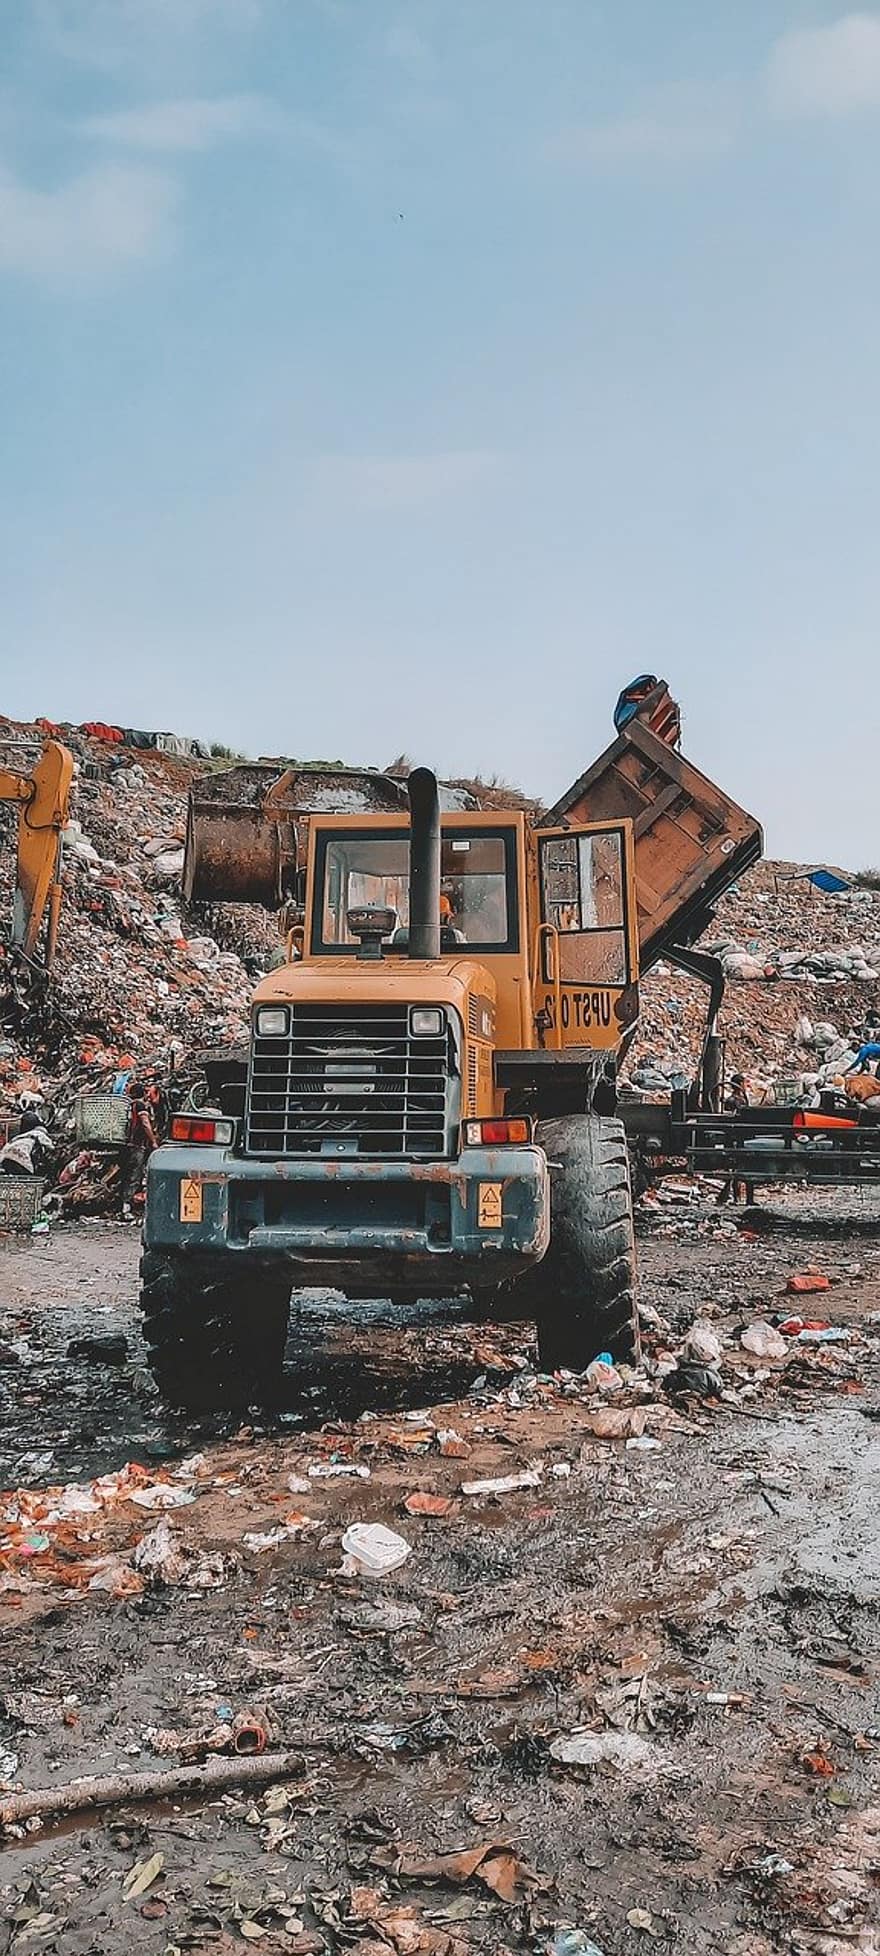 トラクター、ダンプサイト、トラック、ダンプトラック、車両、ゴミ捨て場、バンタルゲバン、インドネシア、ゴミ、ジャンク